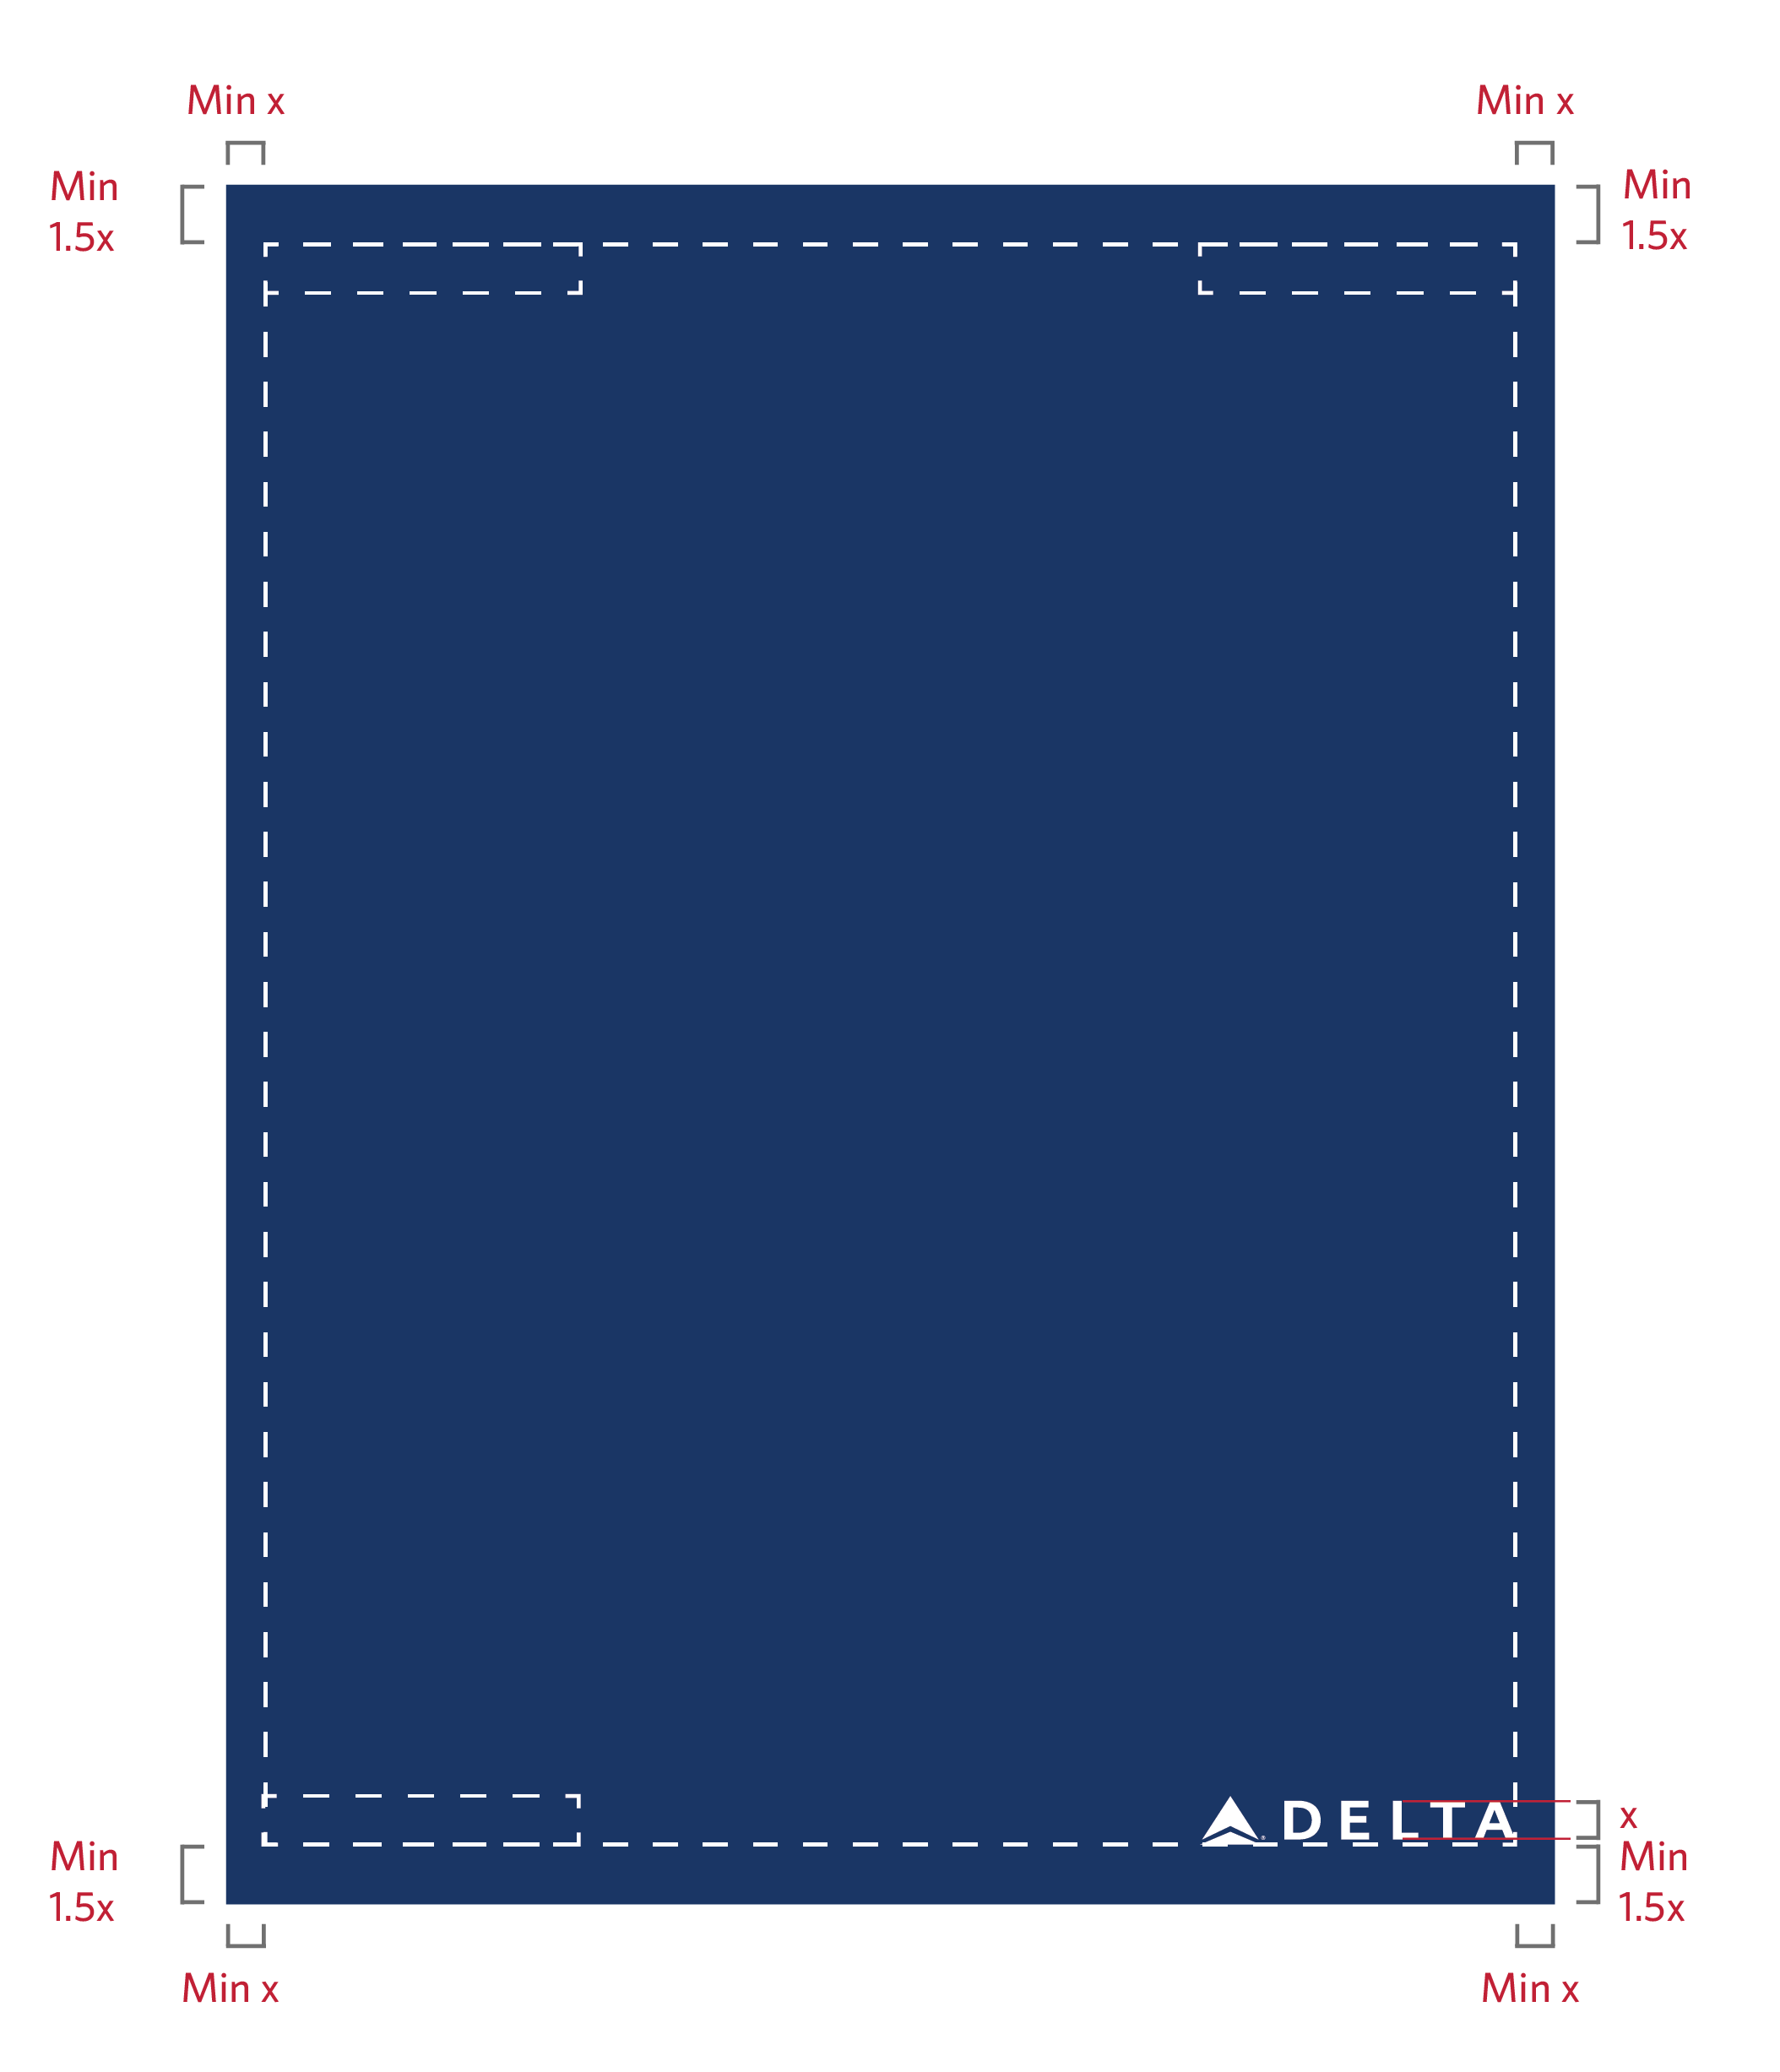 Blue X Logo - Delta Logos | Delta News Hub